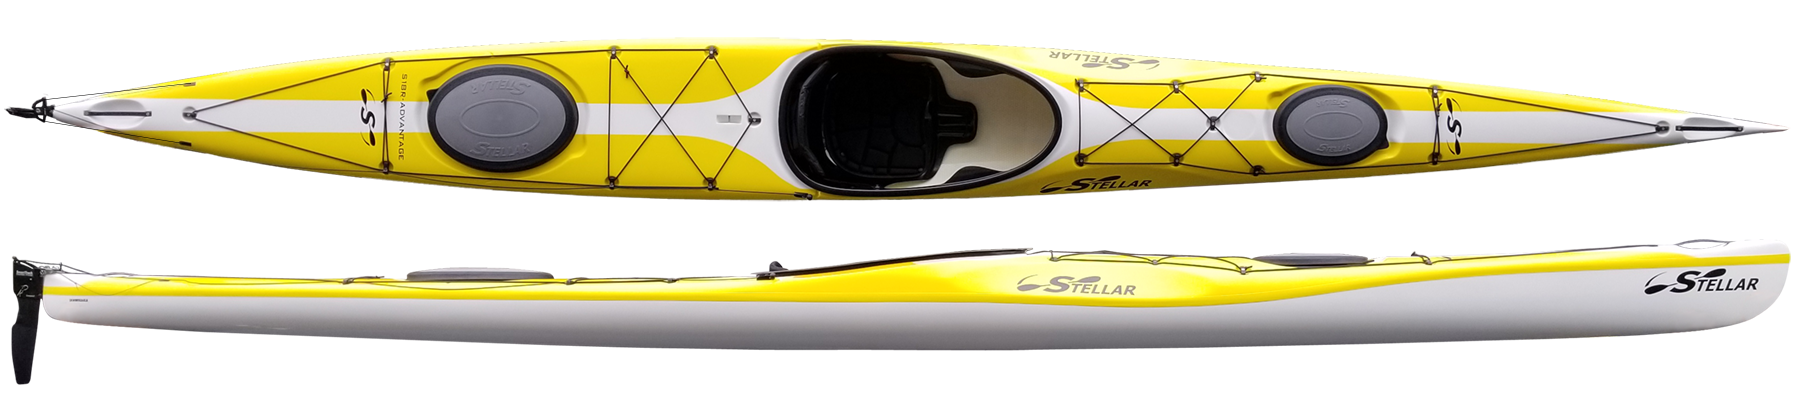 Kayaks: S18R G2 by Stellar Kayaks - Image 4702